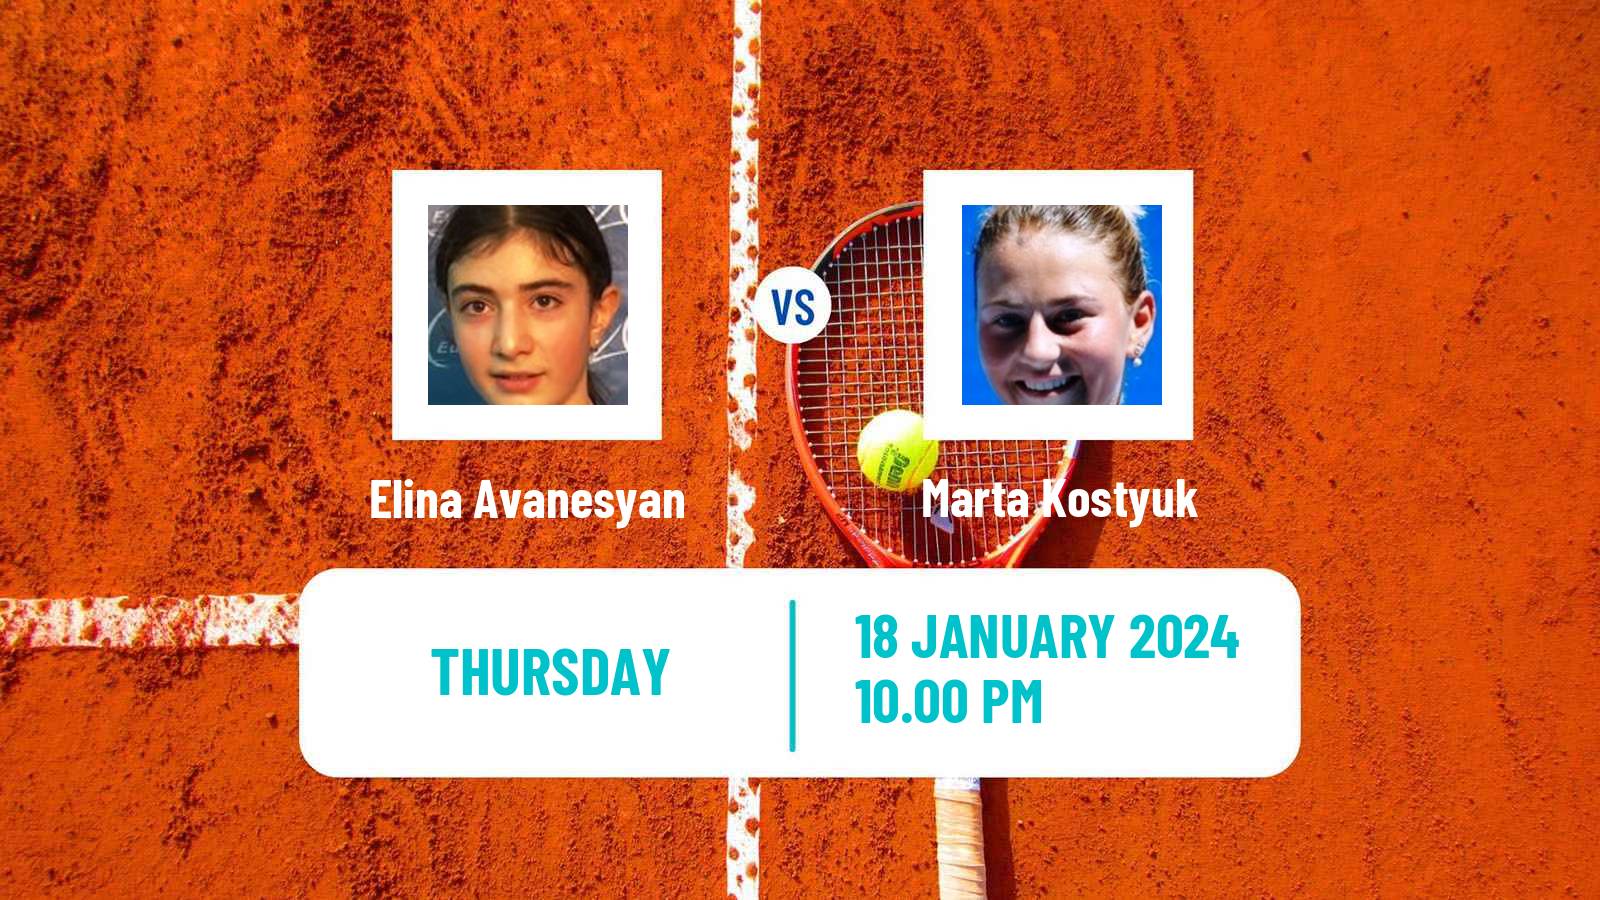 Tennis WTA Australian Open Elina Avanesyan - Marta Kostyuk